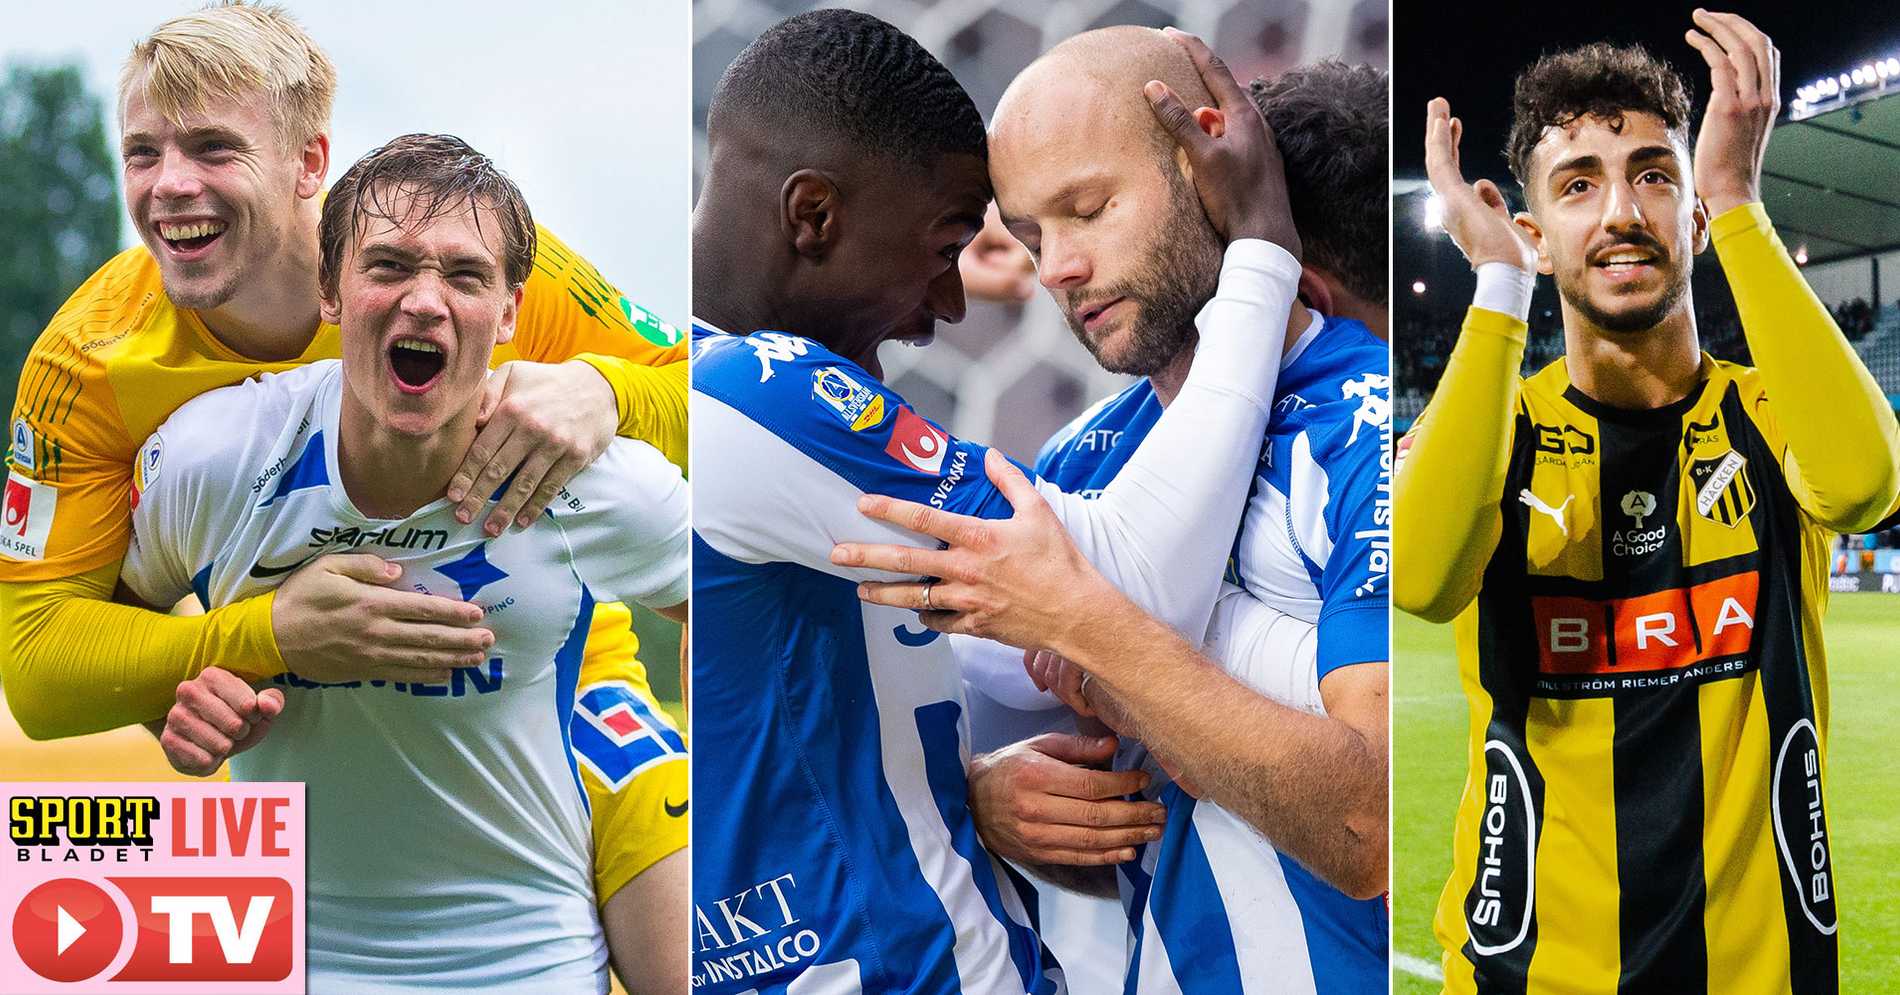 IFK Norrköping: Sportbladet sänder Blåvitt, Norrköping och Häckens matcher